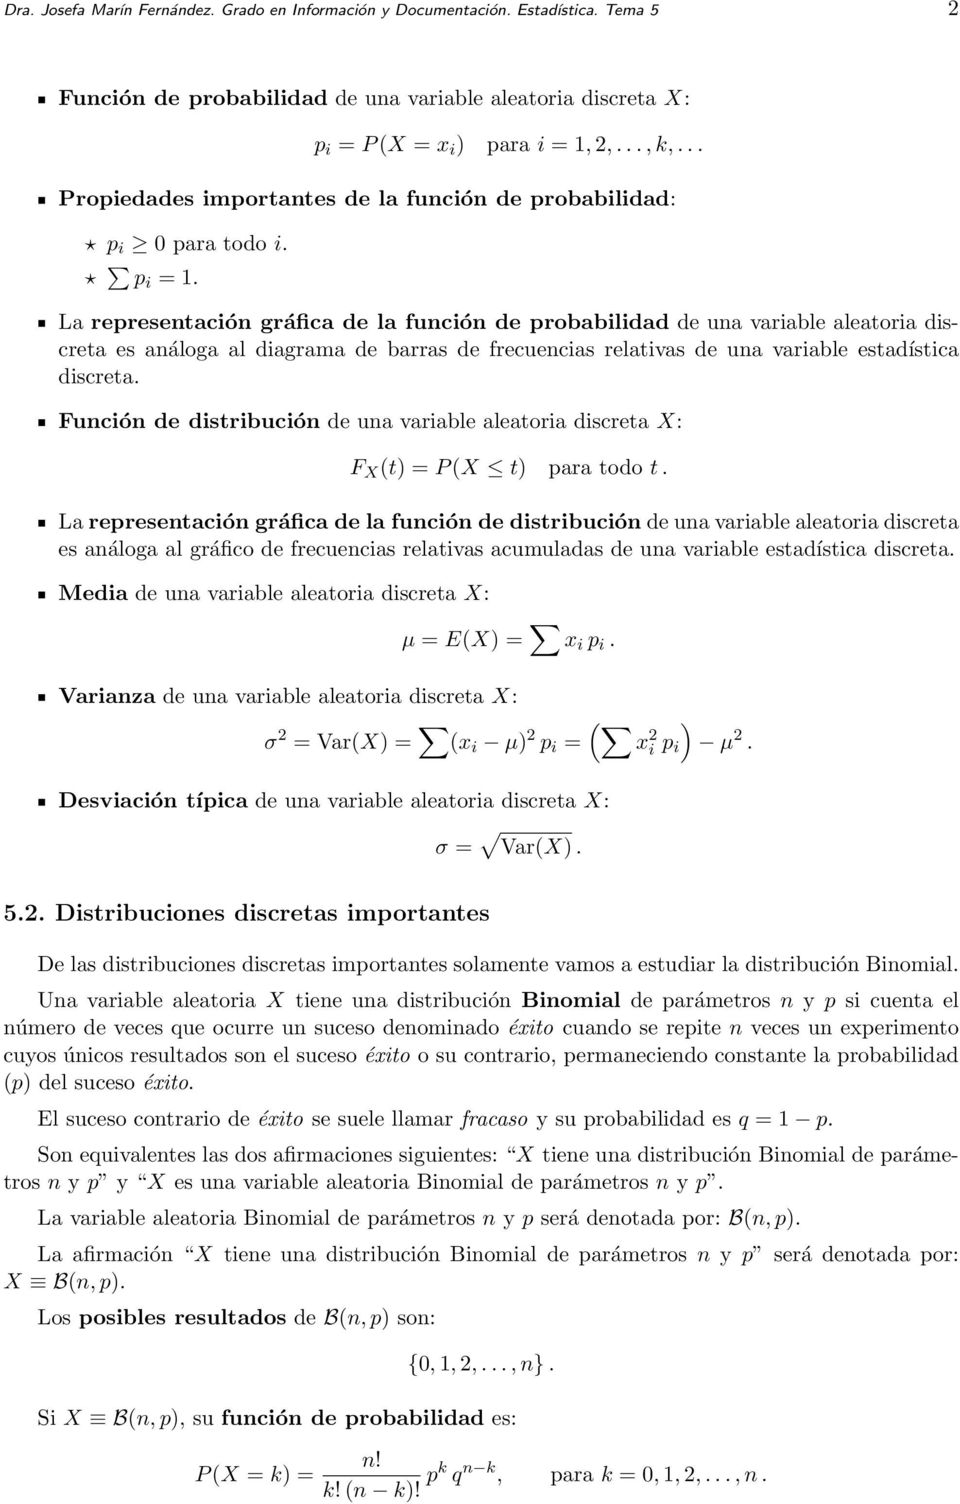 La representación gráfica de la función de probabilidad de una variable aleatoria discreta es análoga al diagrama de barras de frecuencias relativas de una variable estadística discreta.